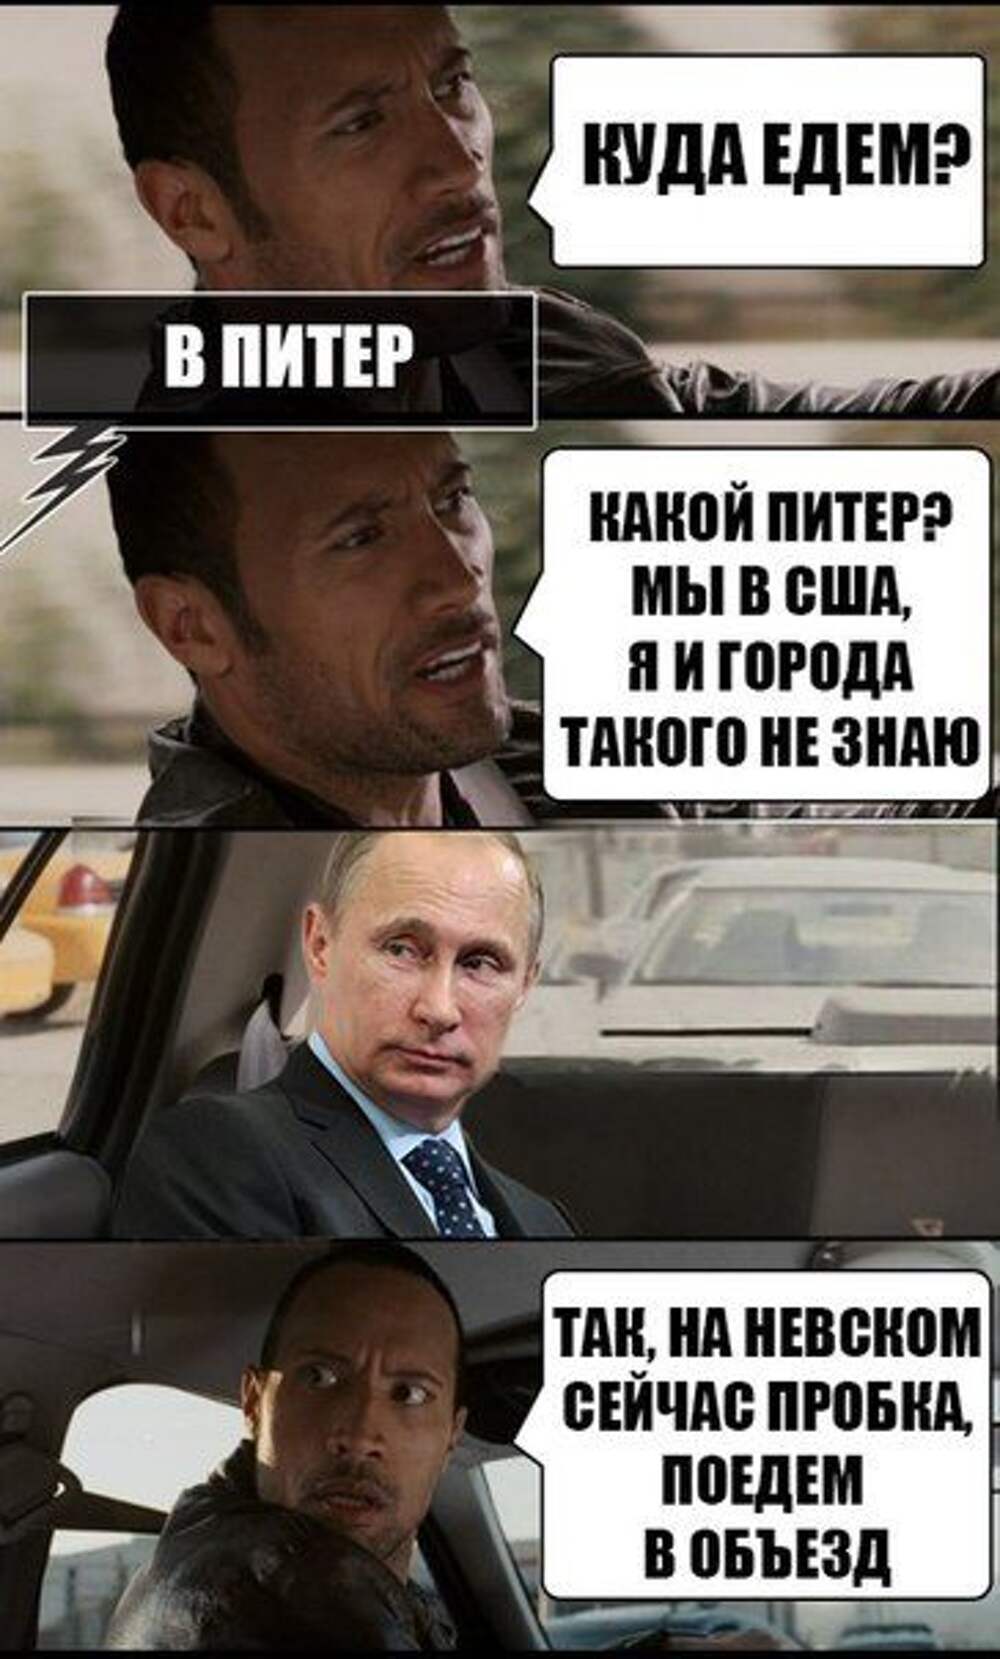 Мемы про таксистов